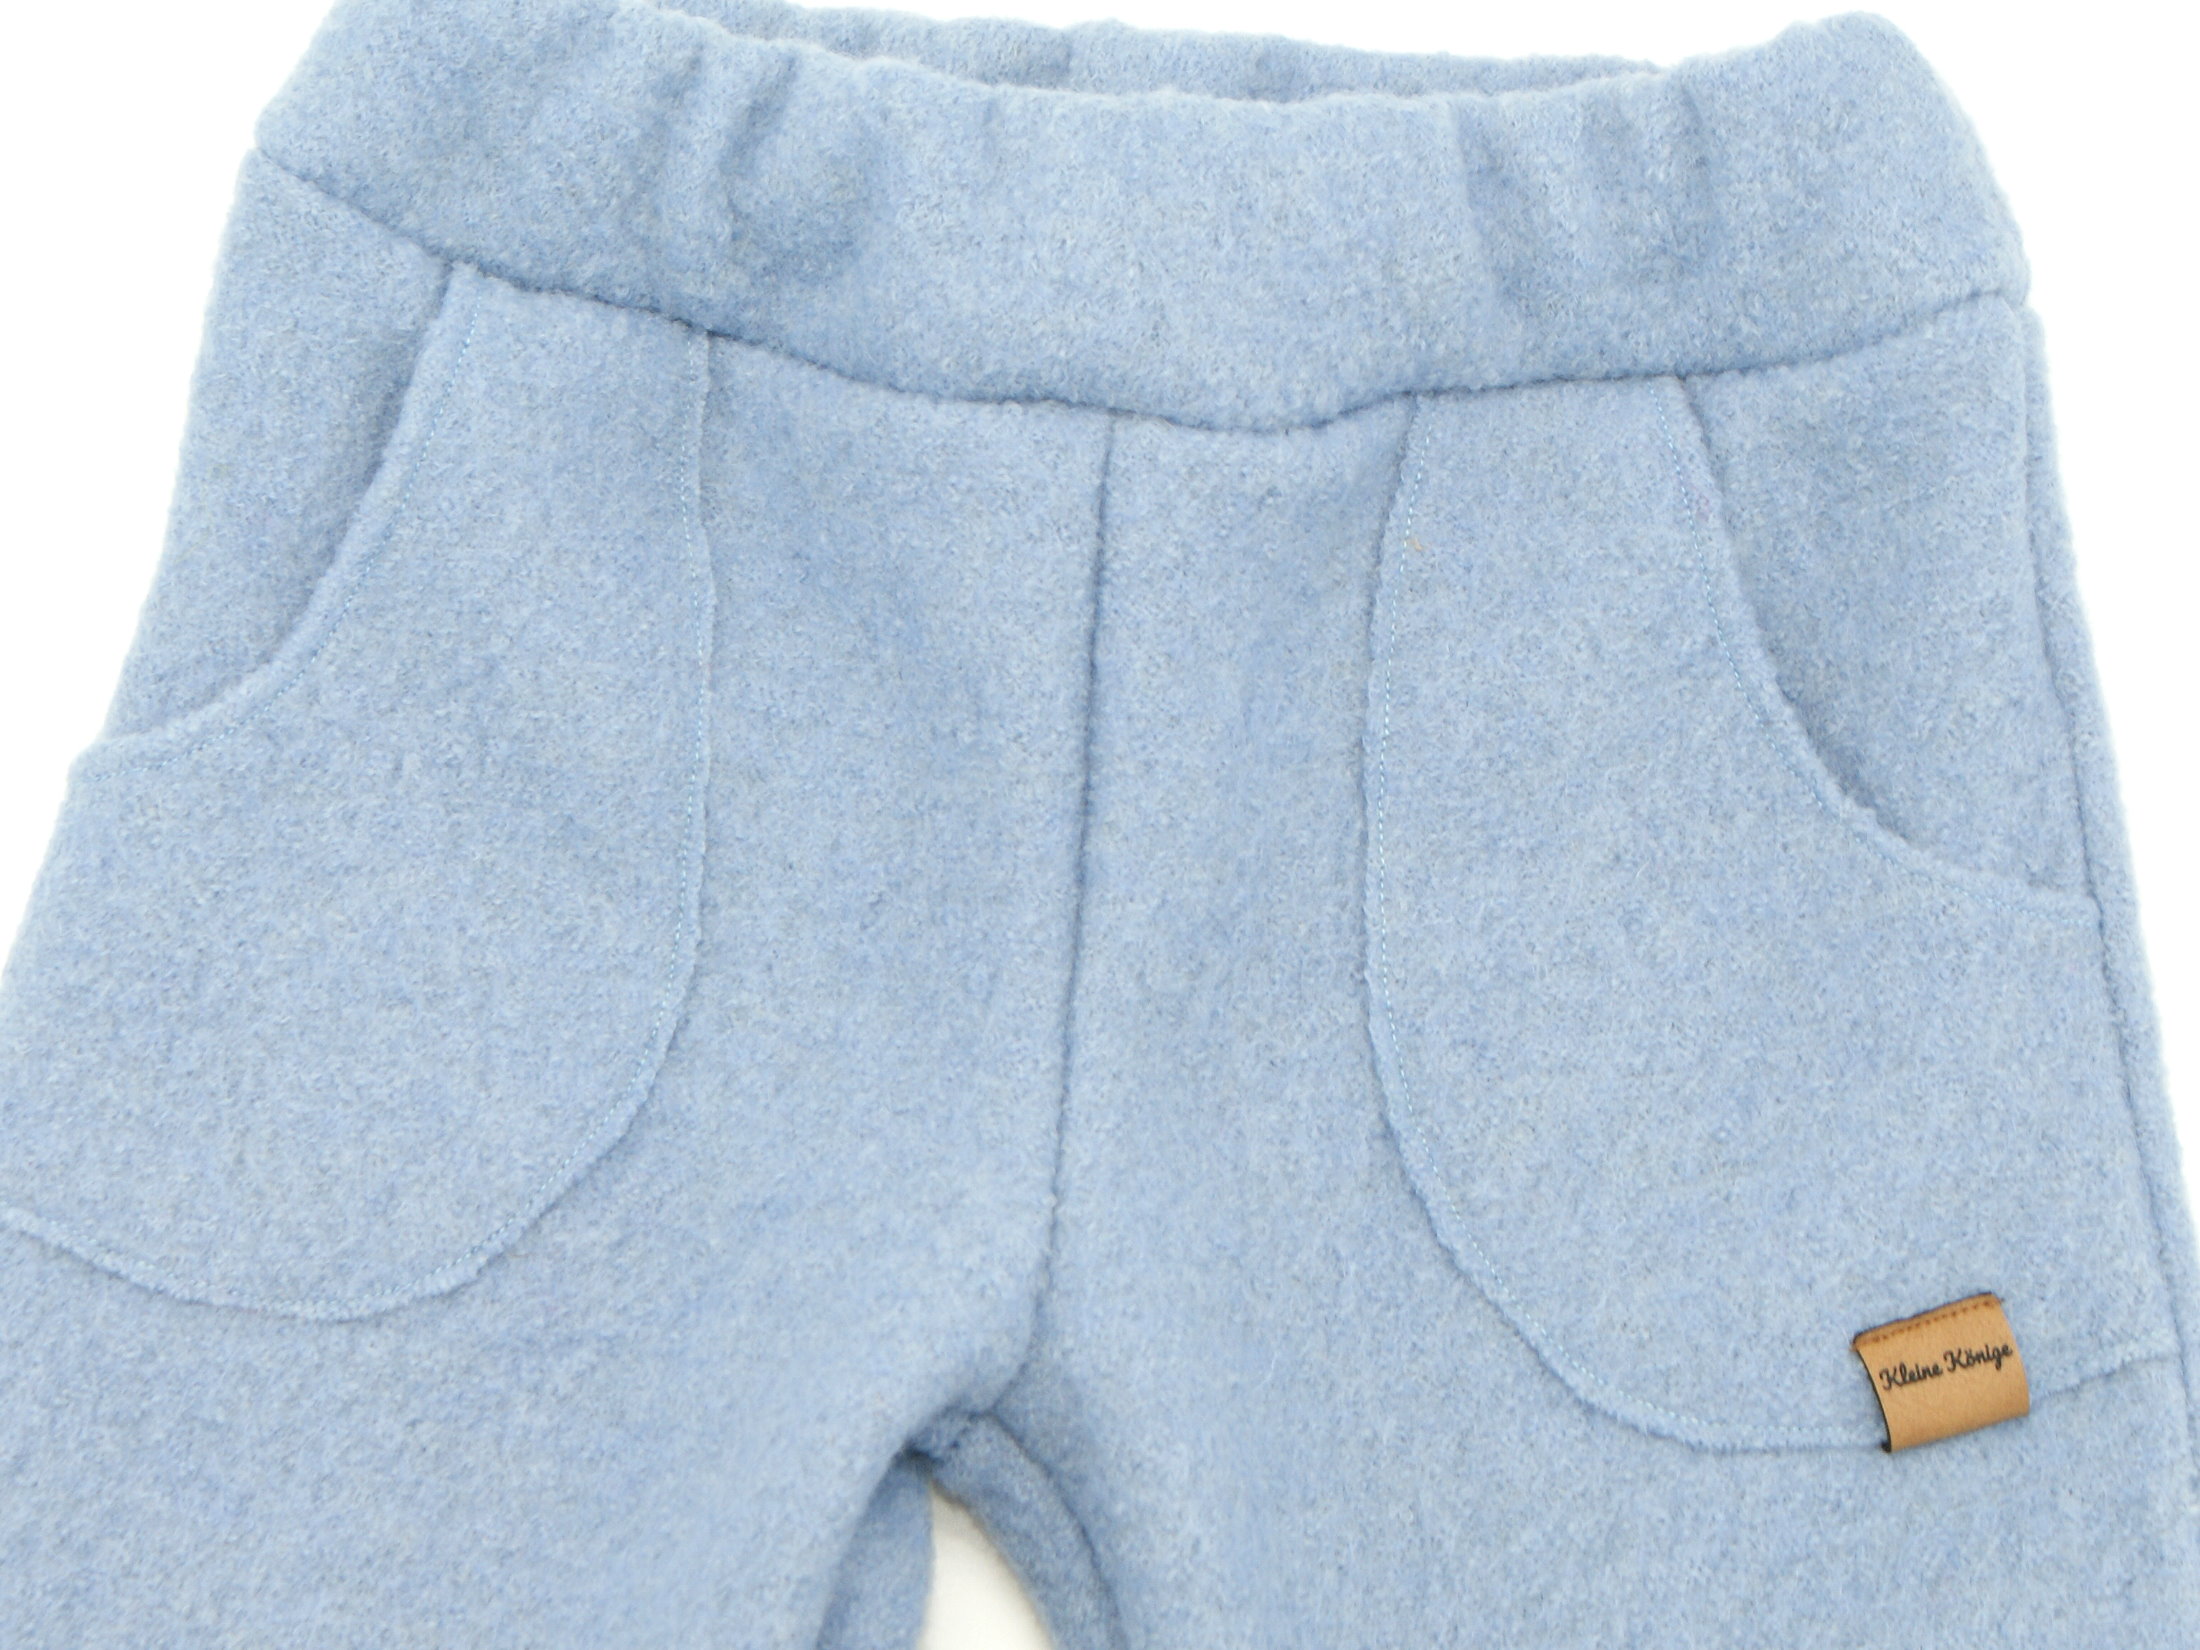 Kinderhose aus Wollwalk in Hellblau mit Gummizug und Taschen